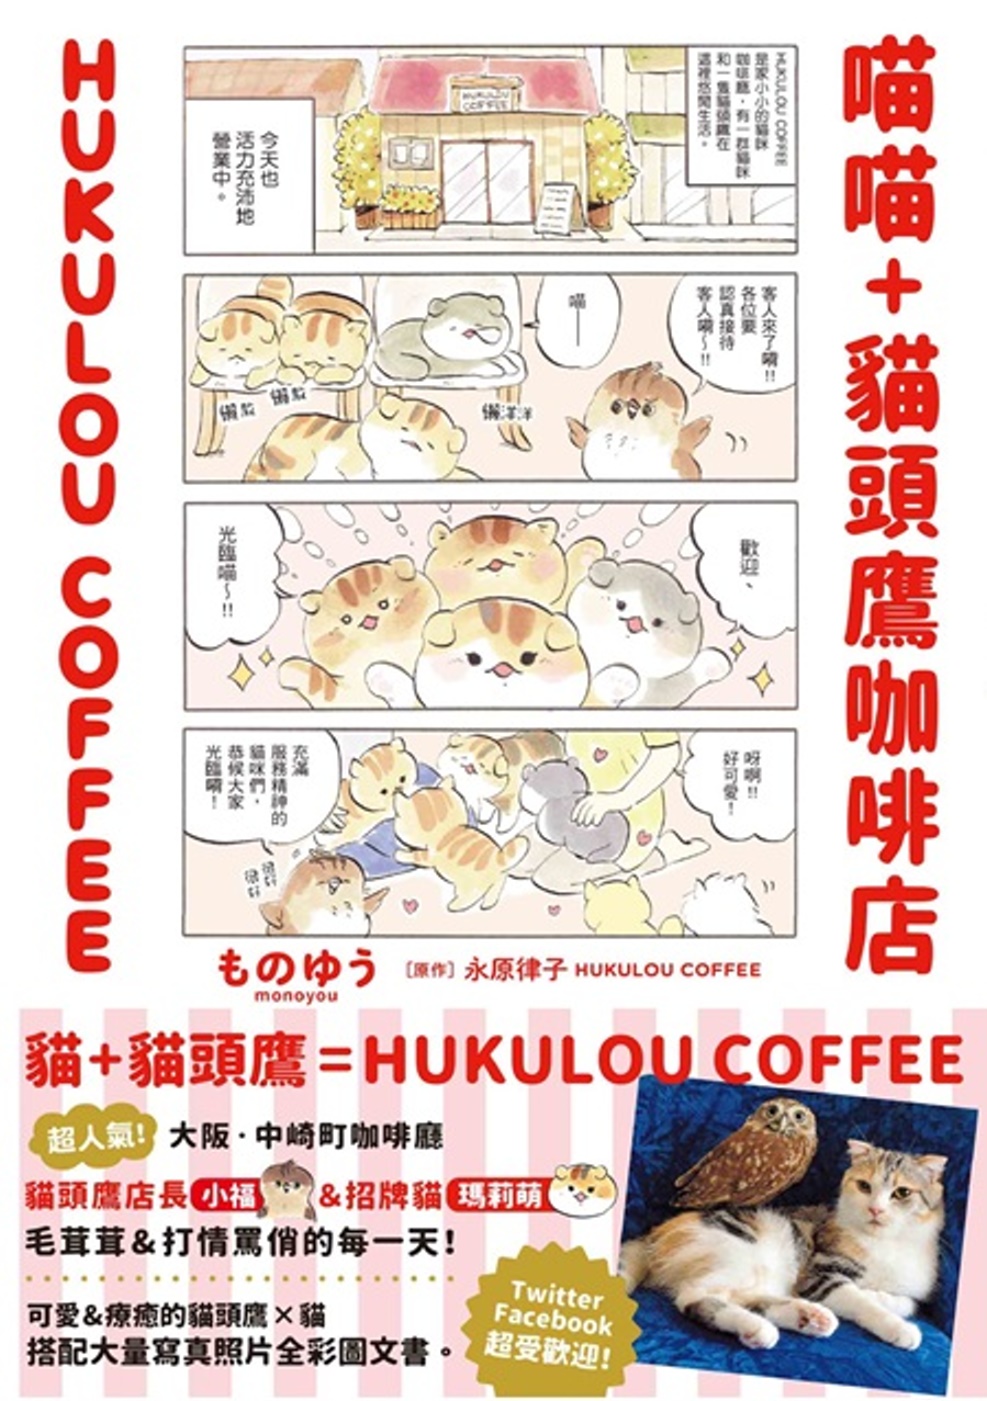 喵喵+貓頭鷹咖啡店 HUKULOU COFFEE